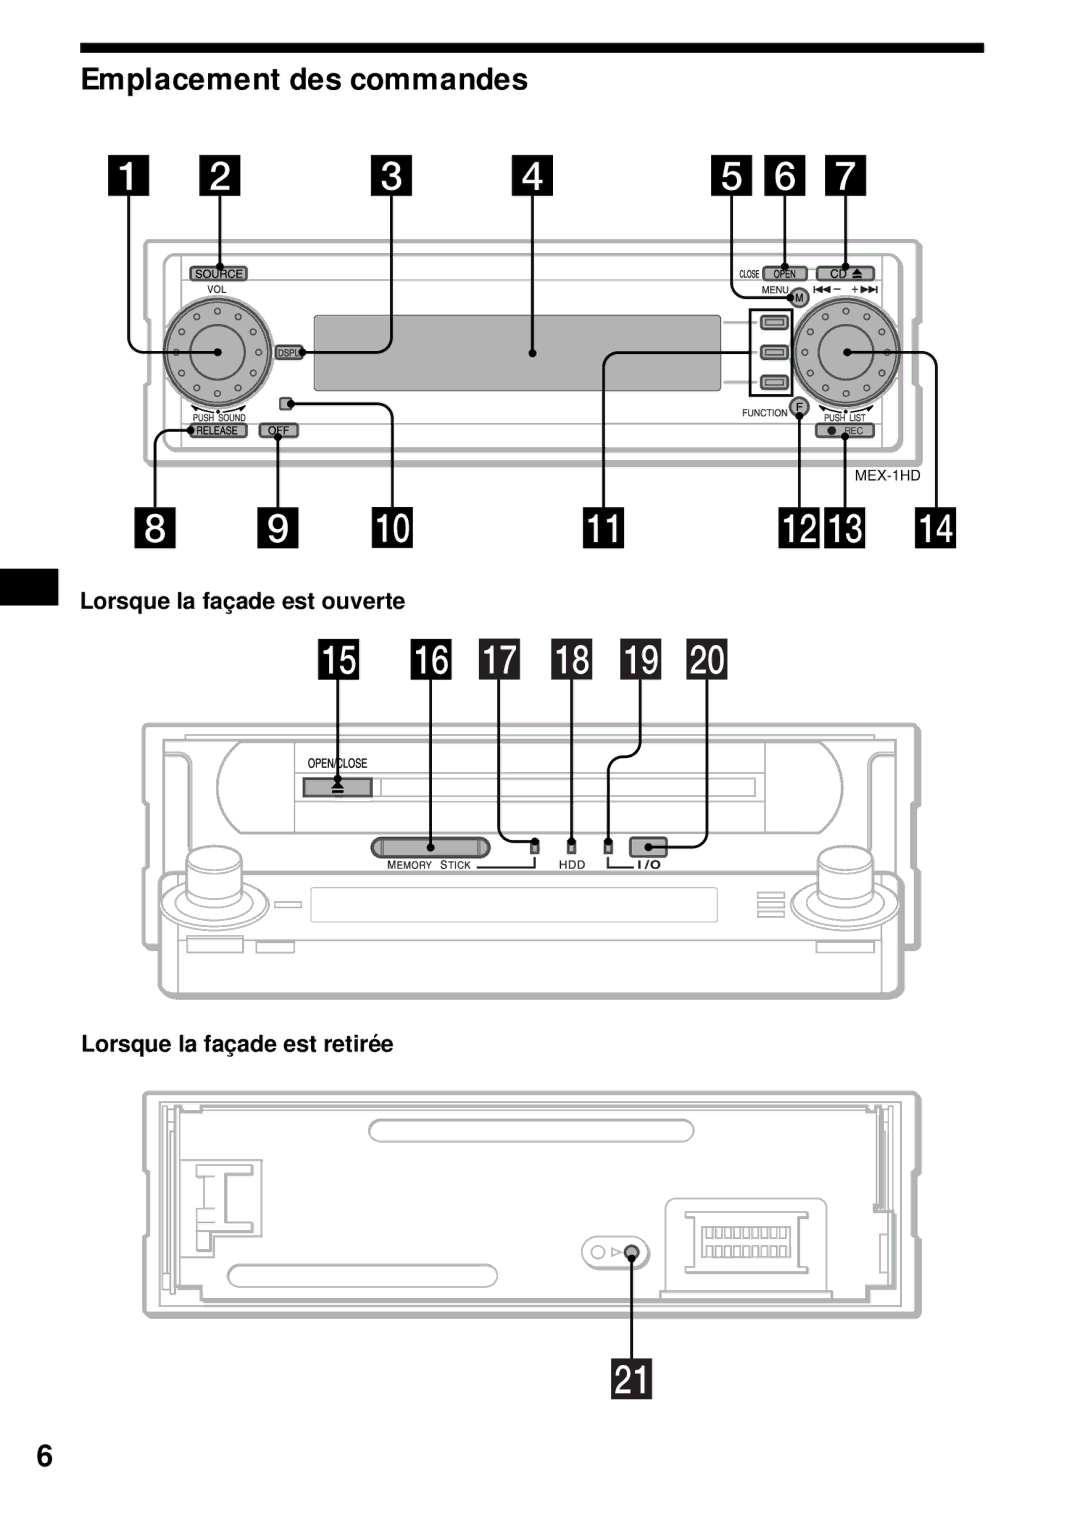 Sony MEX-1HD operating instructions Emplacement des commandes, Lorsque la façade est ouverte Lorsque la façade est retirée 